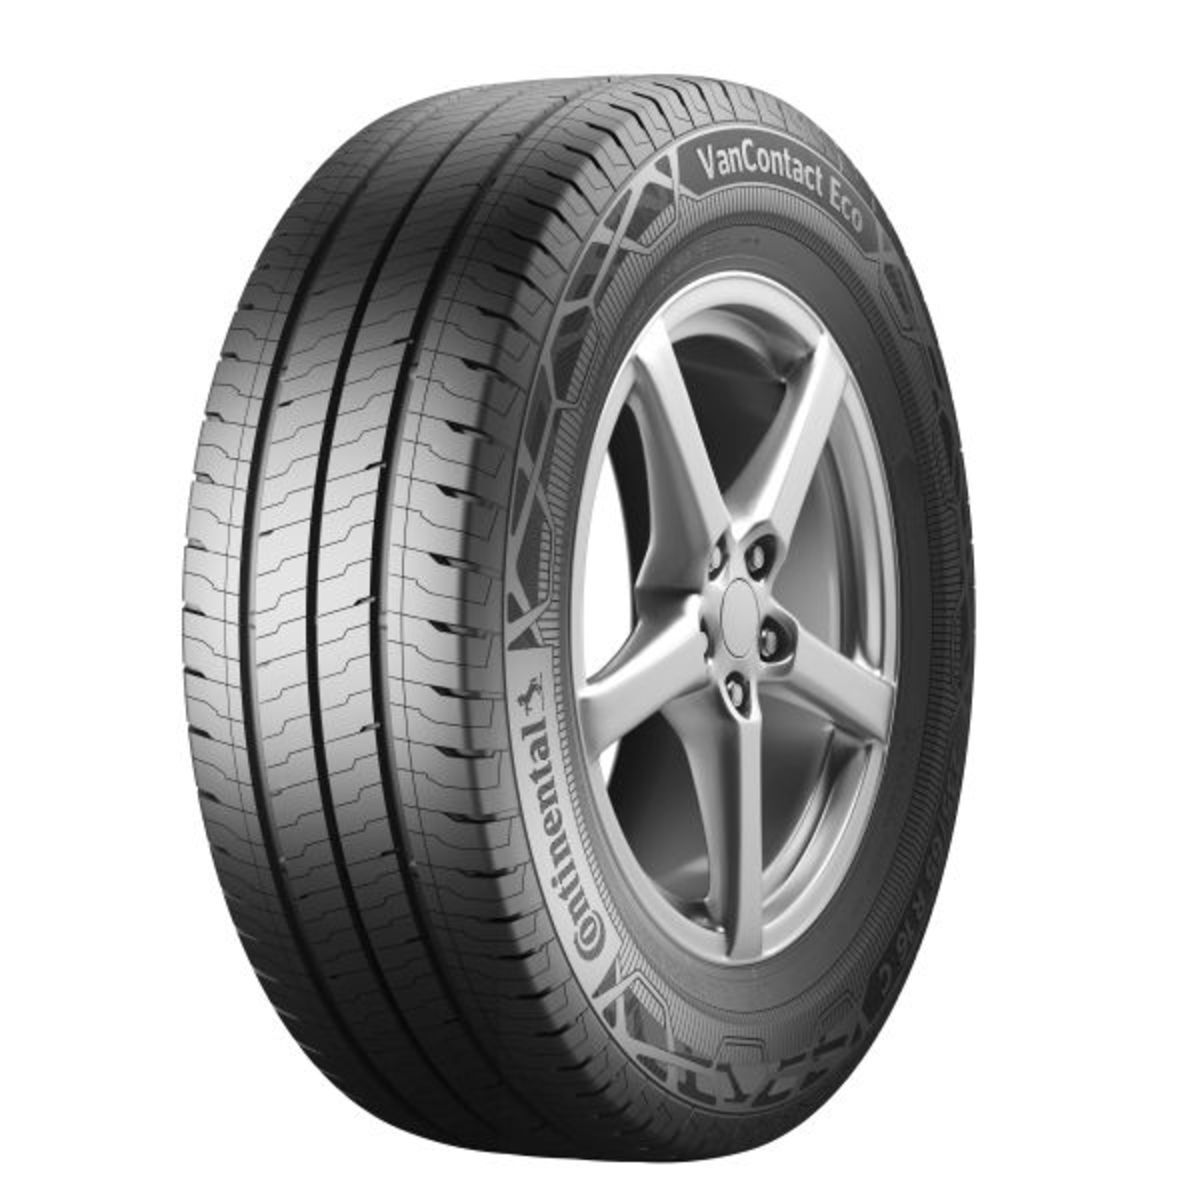 Neumáticos de verano CONTINENTAL VanContact Eco 225/70R15C, 112/110R TL